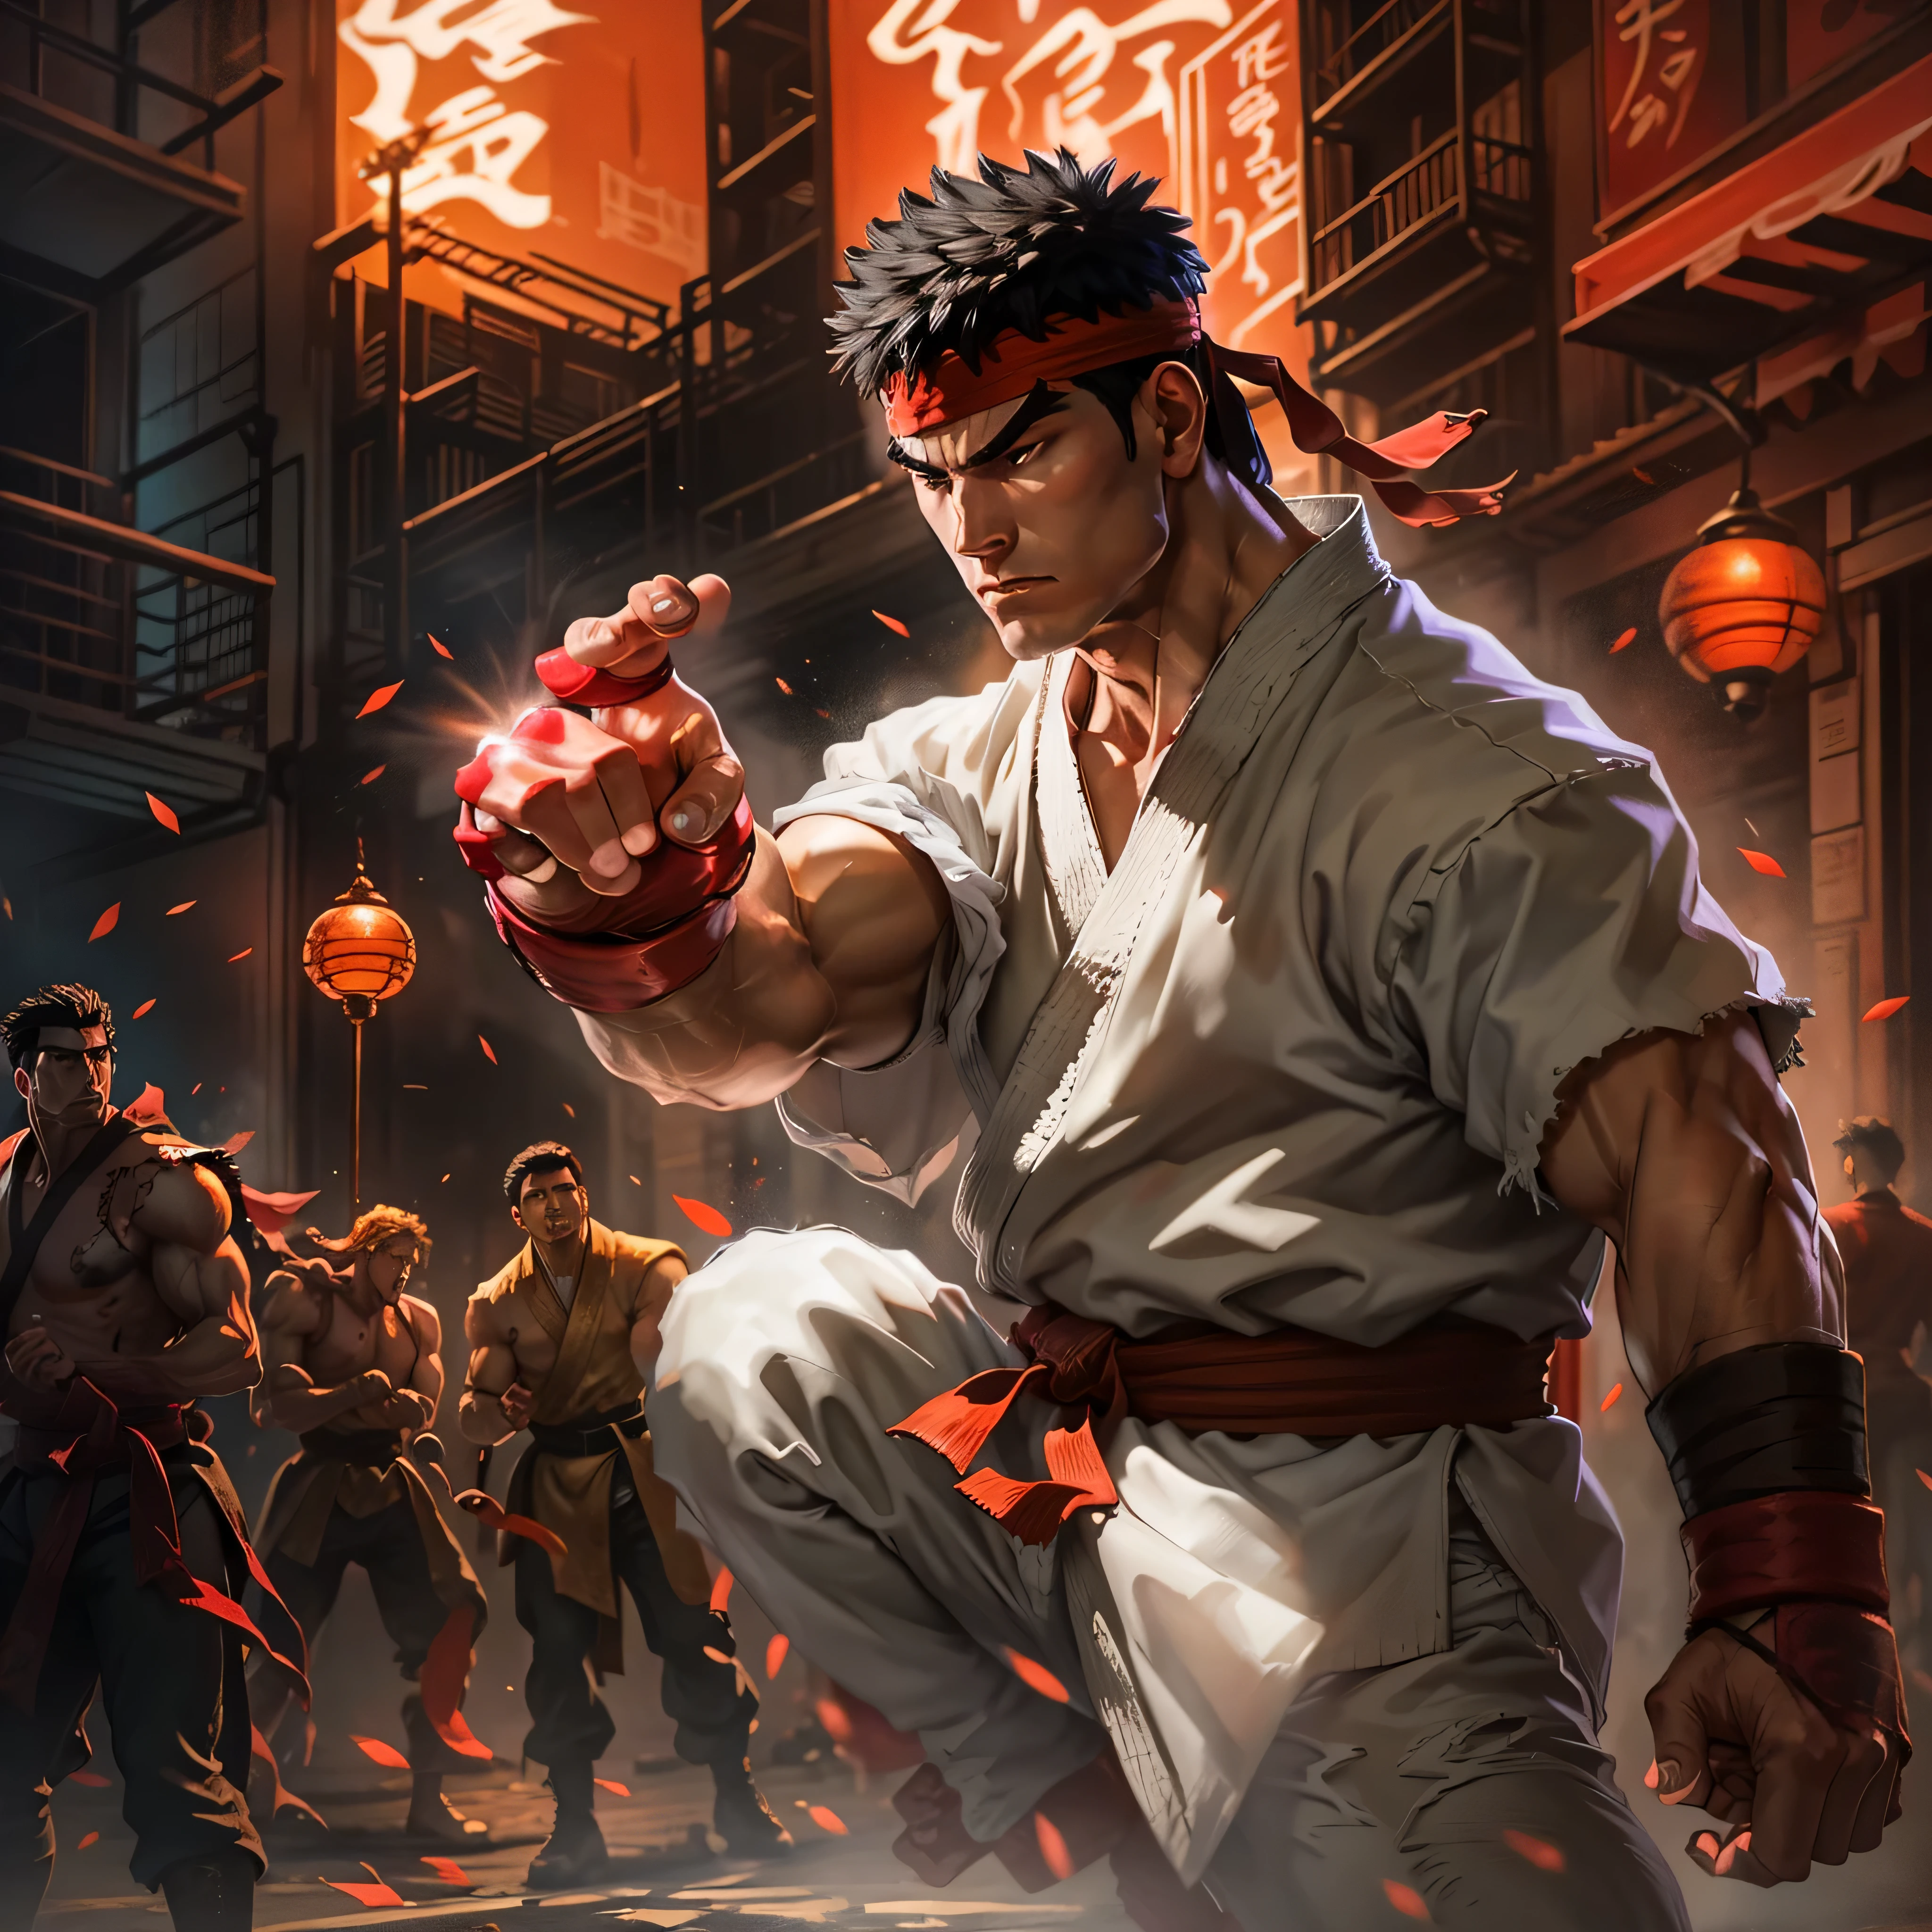 《街头霸王 2》中 Ryu 的黑色电影剧照: 世界战士, 身着标志性的无袖白色空手道服和红色头带, 一只手臂向前伸出，手掌中悬浮着一个发光的能量球, 在昏暗的背景下散发出强烈的光芒. 他的另一只手臂紧绷, 向后拉，仿佛准备进行最有力的武术攻击. 围观的人群, 敬畏的旁观者和心存恐惧的对手, 挤在昏暗的小巷深处, 他们的表情与 Ryu 的丰富色彩形成鲜明对比